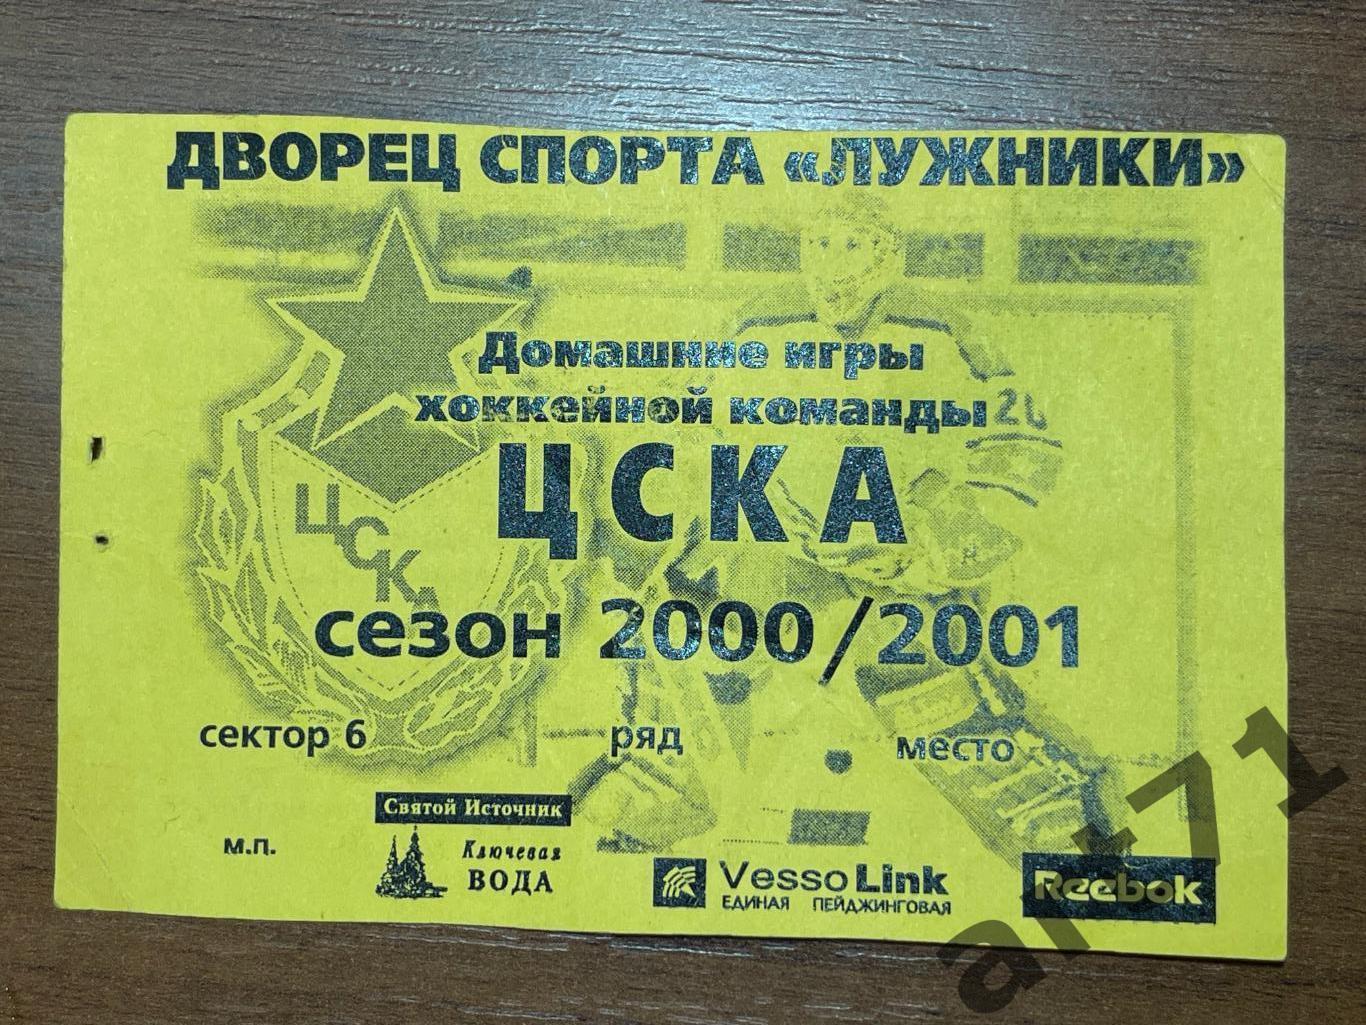 ЦСКА Москва 2000/2001. Абонемент / билет на первую половину сезона